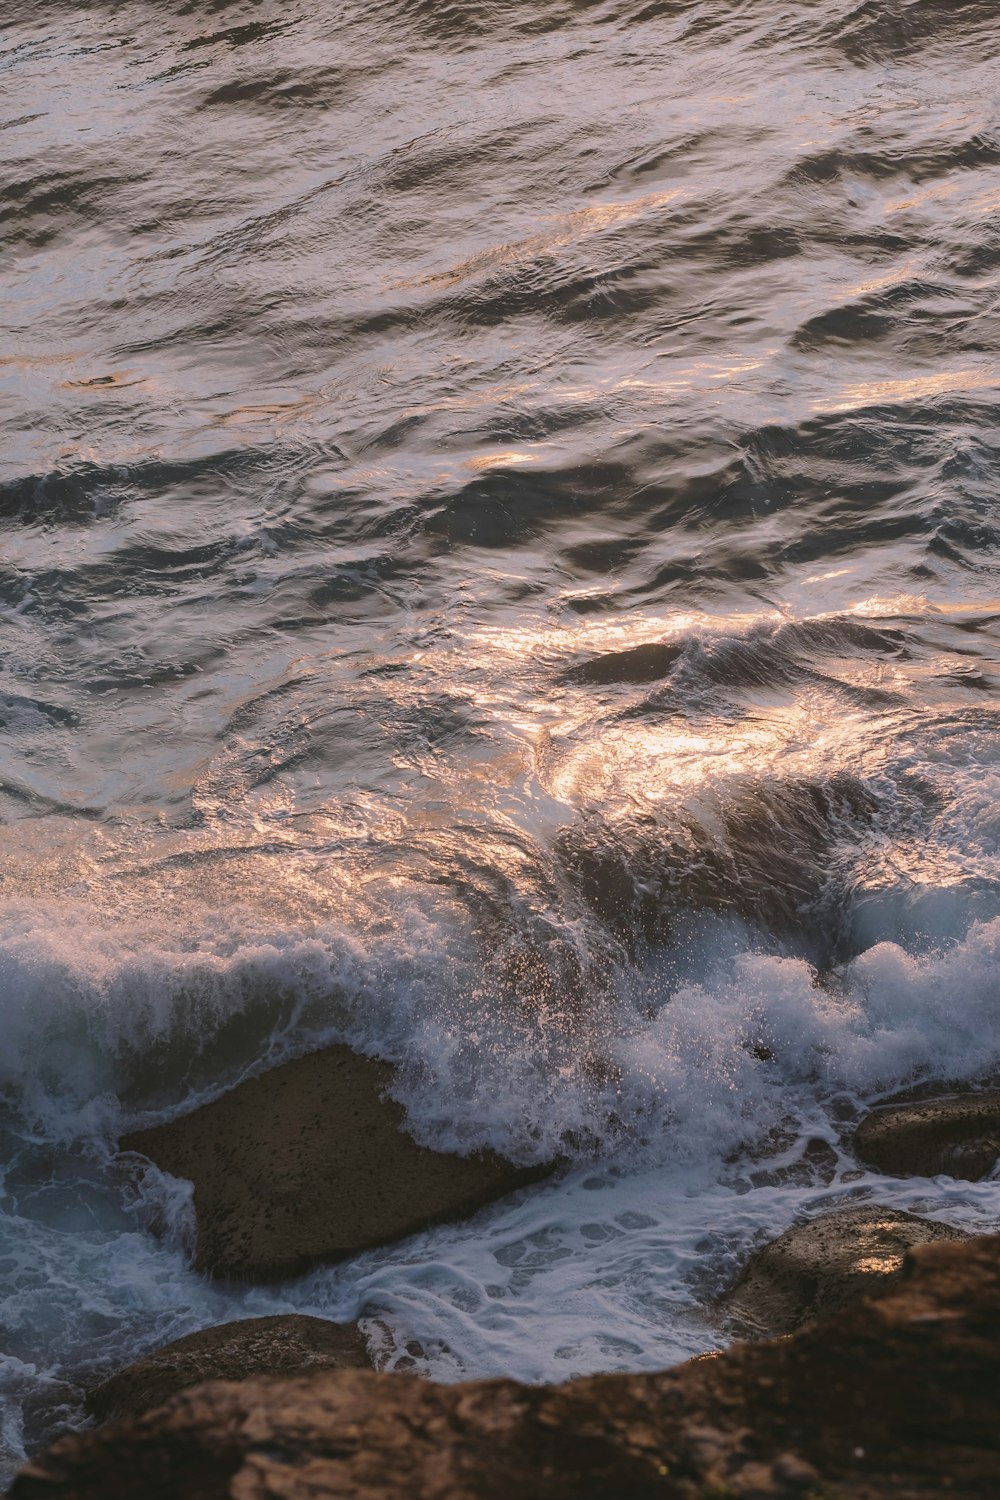 Les vagues de l’océan s’écrasent sur les rochers pendant la journée